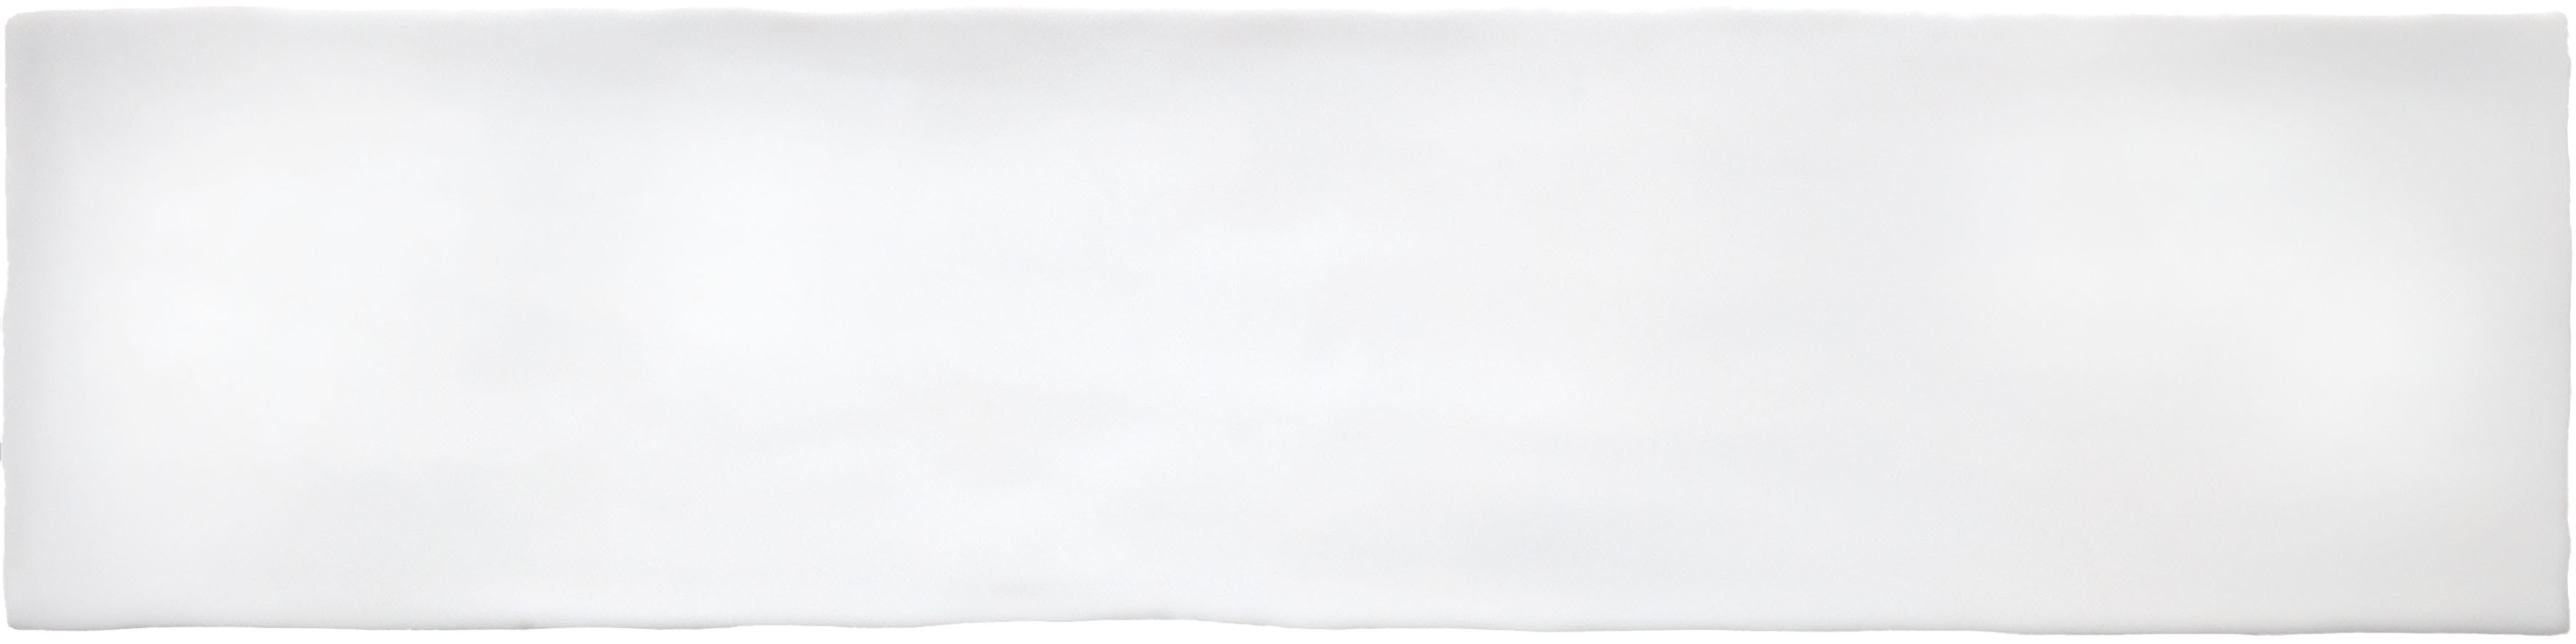 Catalea Gres Lund Metrofliesen Weiß glänzend 7,5x30 cm  